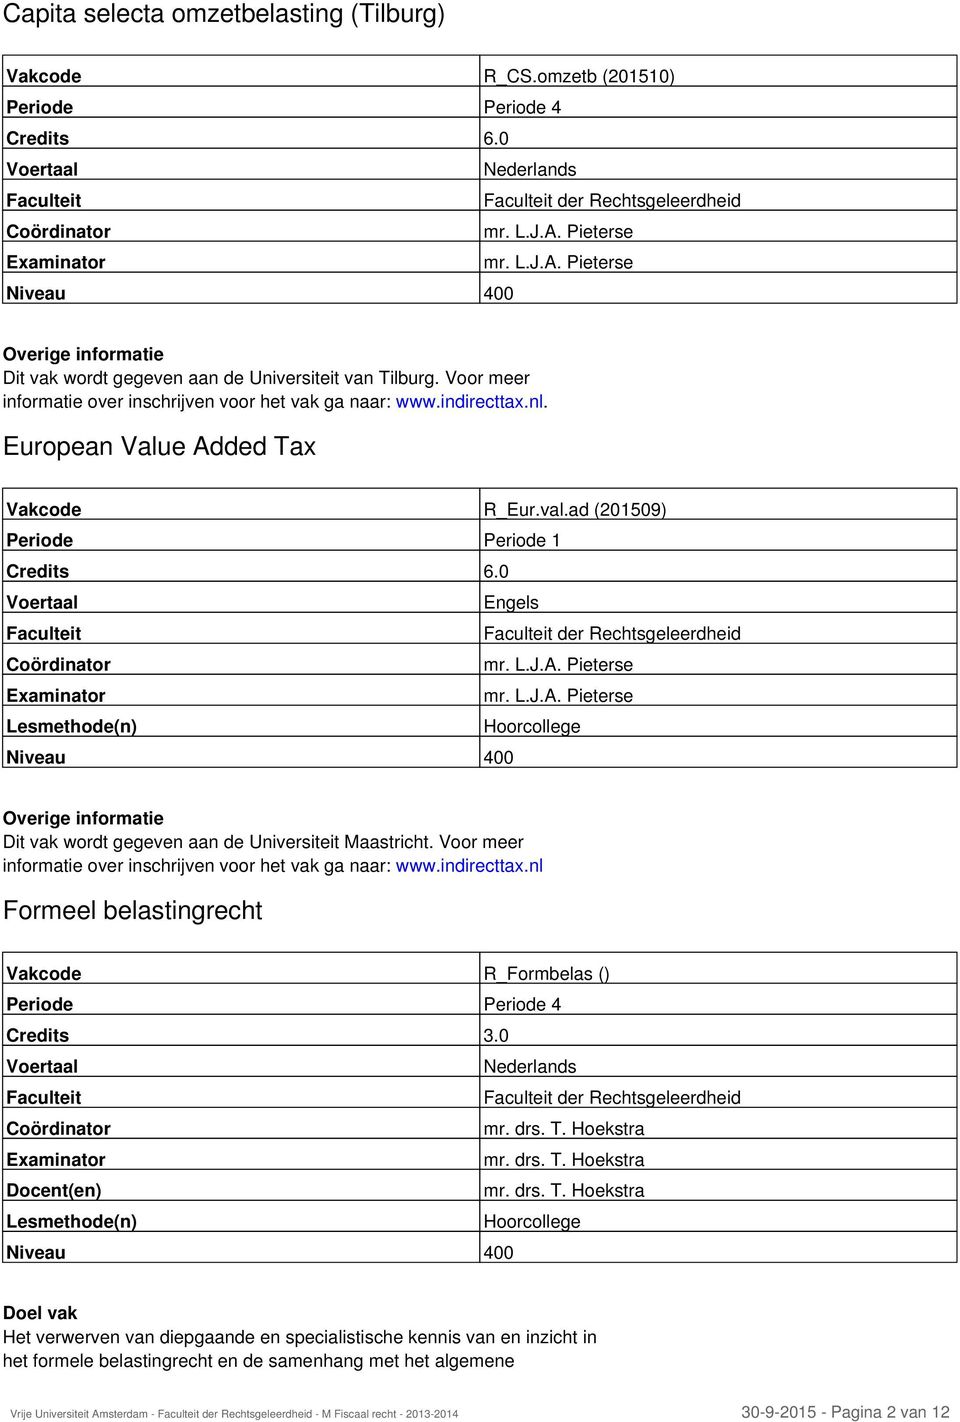 European Value Added Tax Vakcode R_Eur.val.ad (201509) Periode Periode 1 Credits 6.0 Engels der Rechtsgeleerdheid mr. L.J.A. Pieterse mr. L.J.A. Pieterse Hoorcollege Overige informatie Dit vak wordt gegeven aan de Universiteit Maastricht.